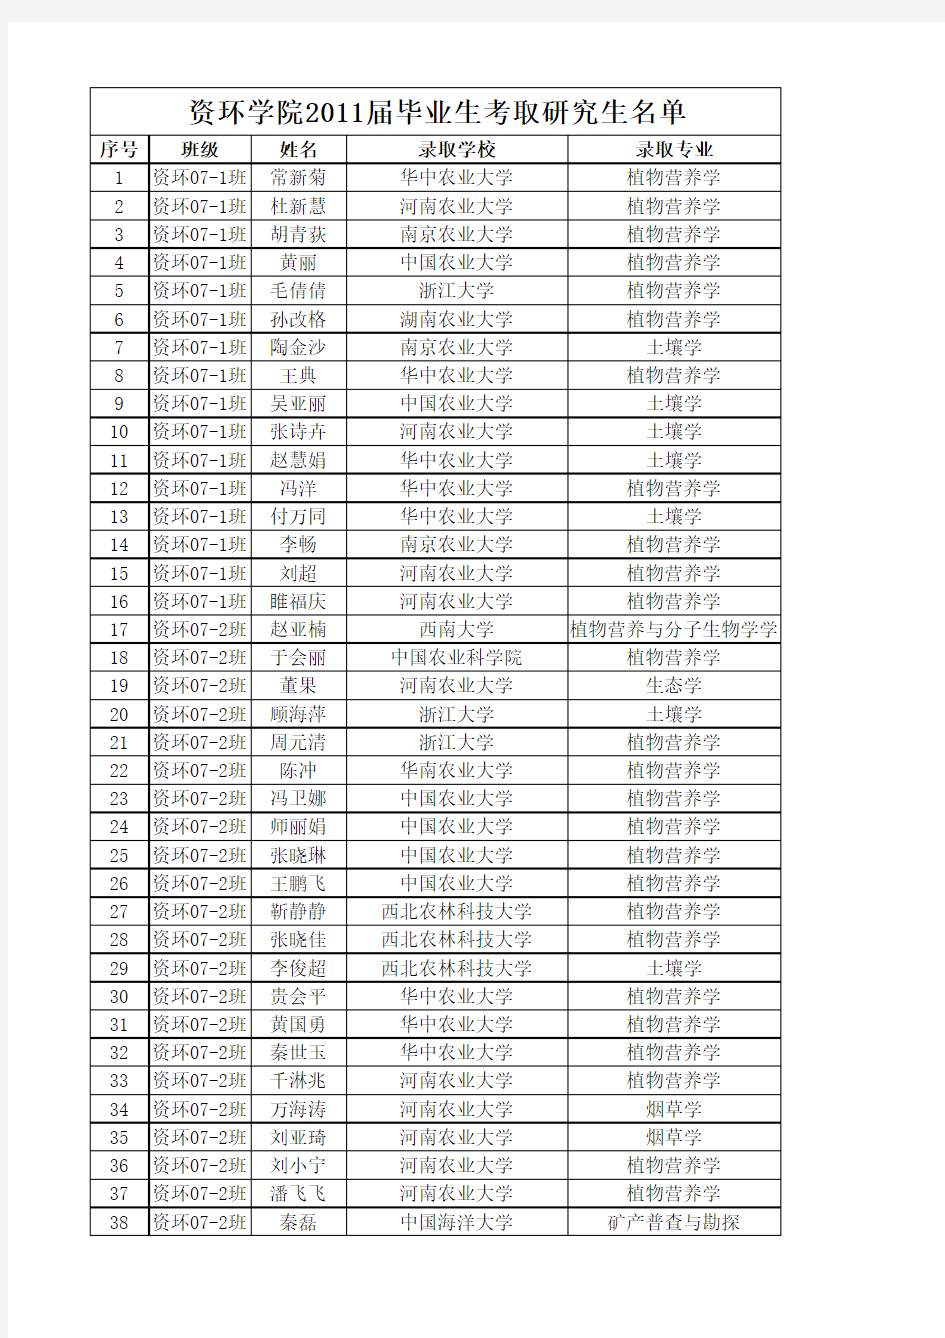 河南农业大学资源与环境学院历年毕业生考研名单(2011—2014年)